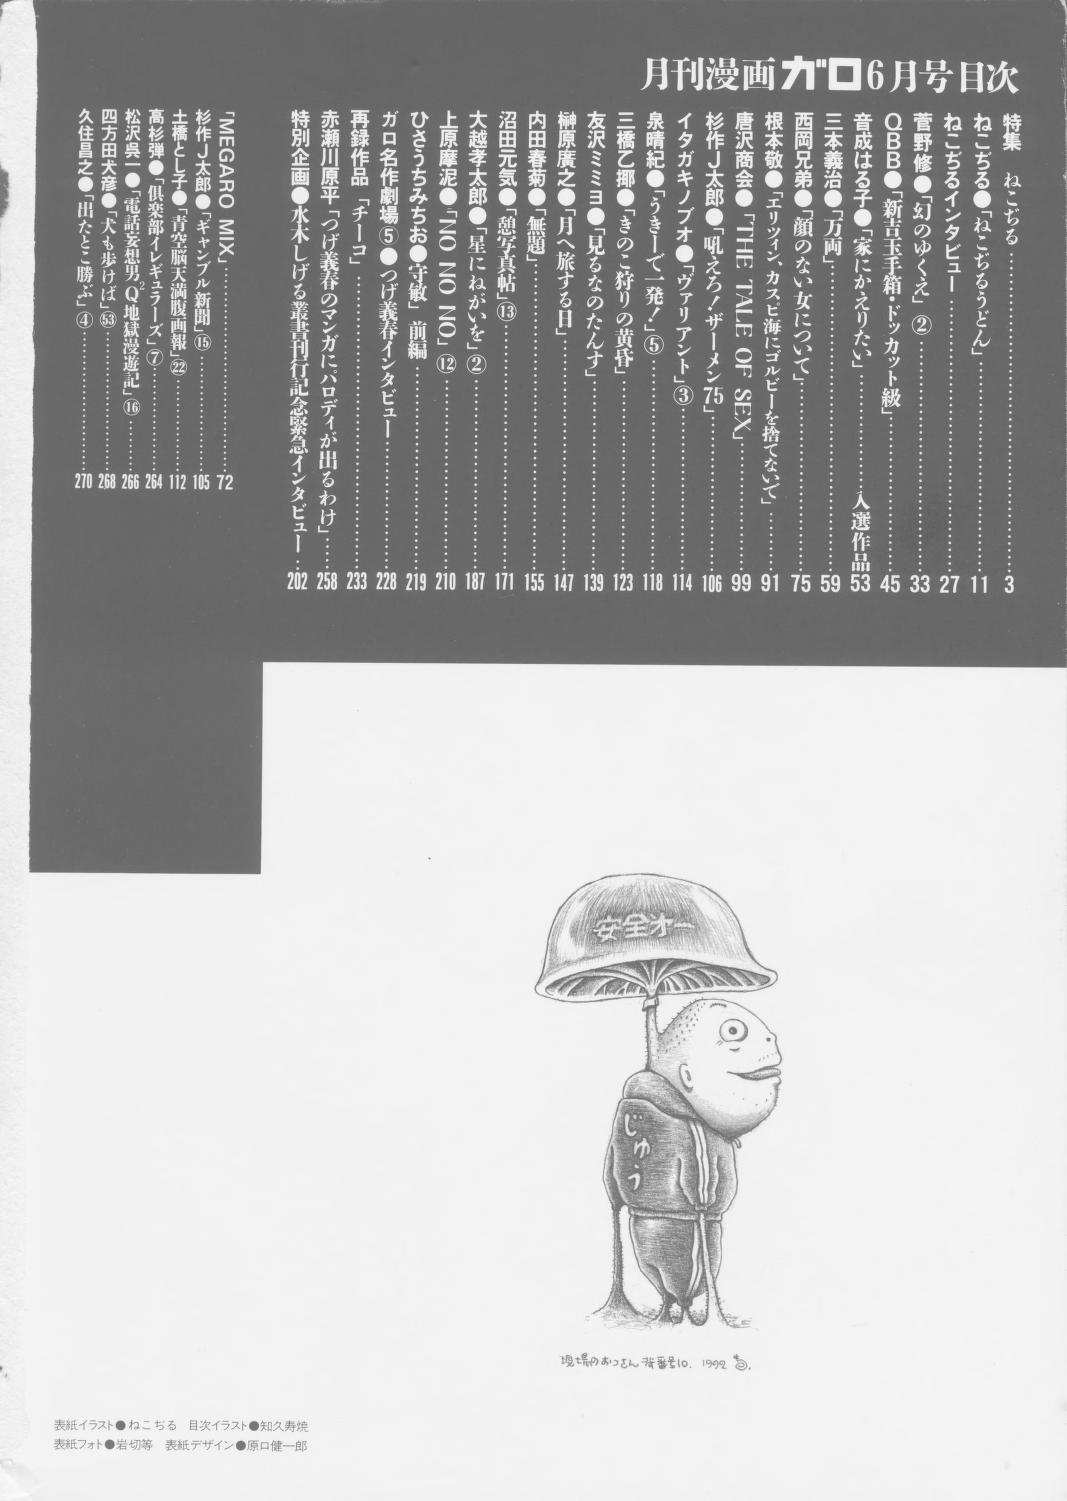 月刊漫画ガロ Monthly Magazine Garo 1992-06 600dpi TIF : 青林堂 